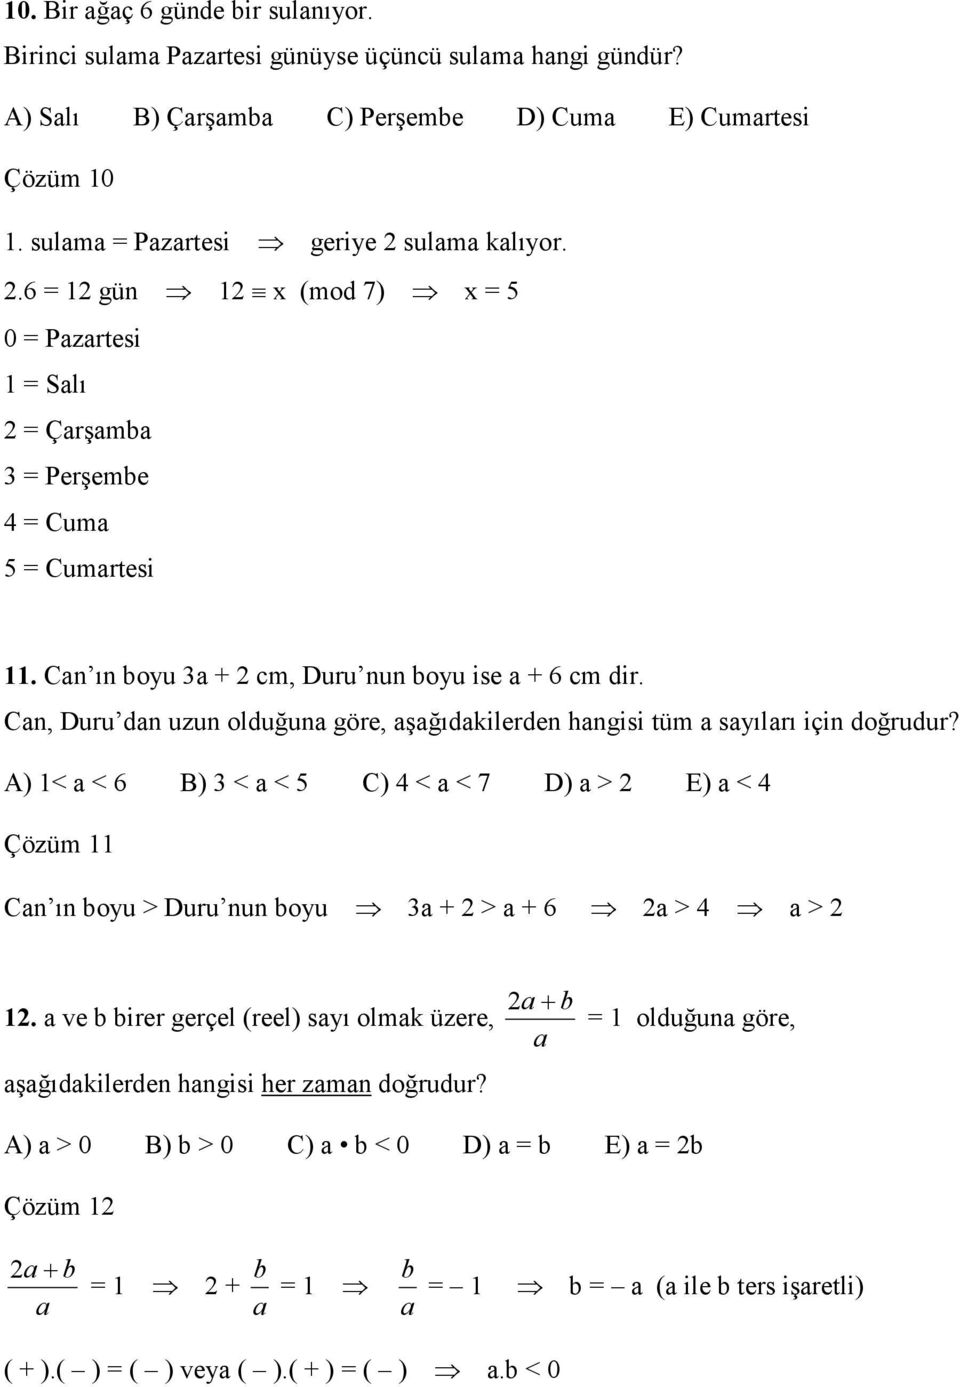 Can, Duru dan uzun olduğuna göre, aşağıdakilerden hangisi tüm a sayıları için doğrudur? A) < a < 6 B) 3 < a < 5 C) 4 < a < 7 D) a > E) a < 4 Çözüm Can ın boyu > Duru nun boyu 3a + > a + 6 a > 4 a >.